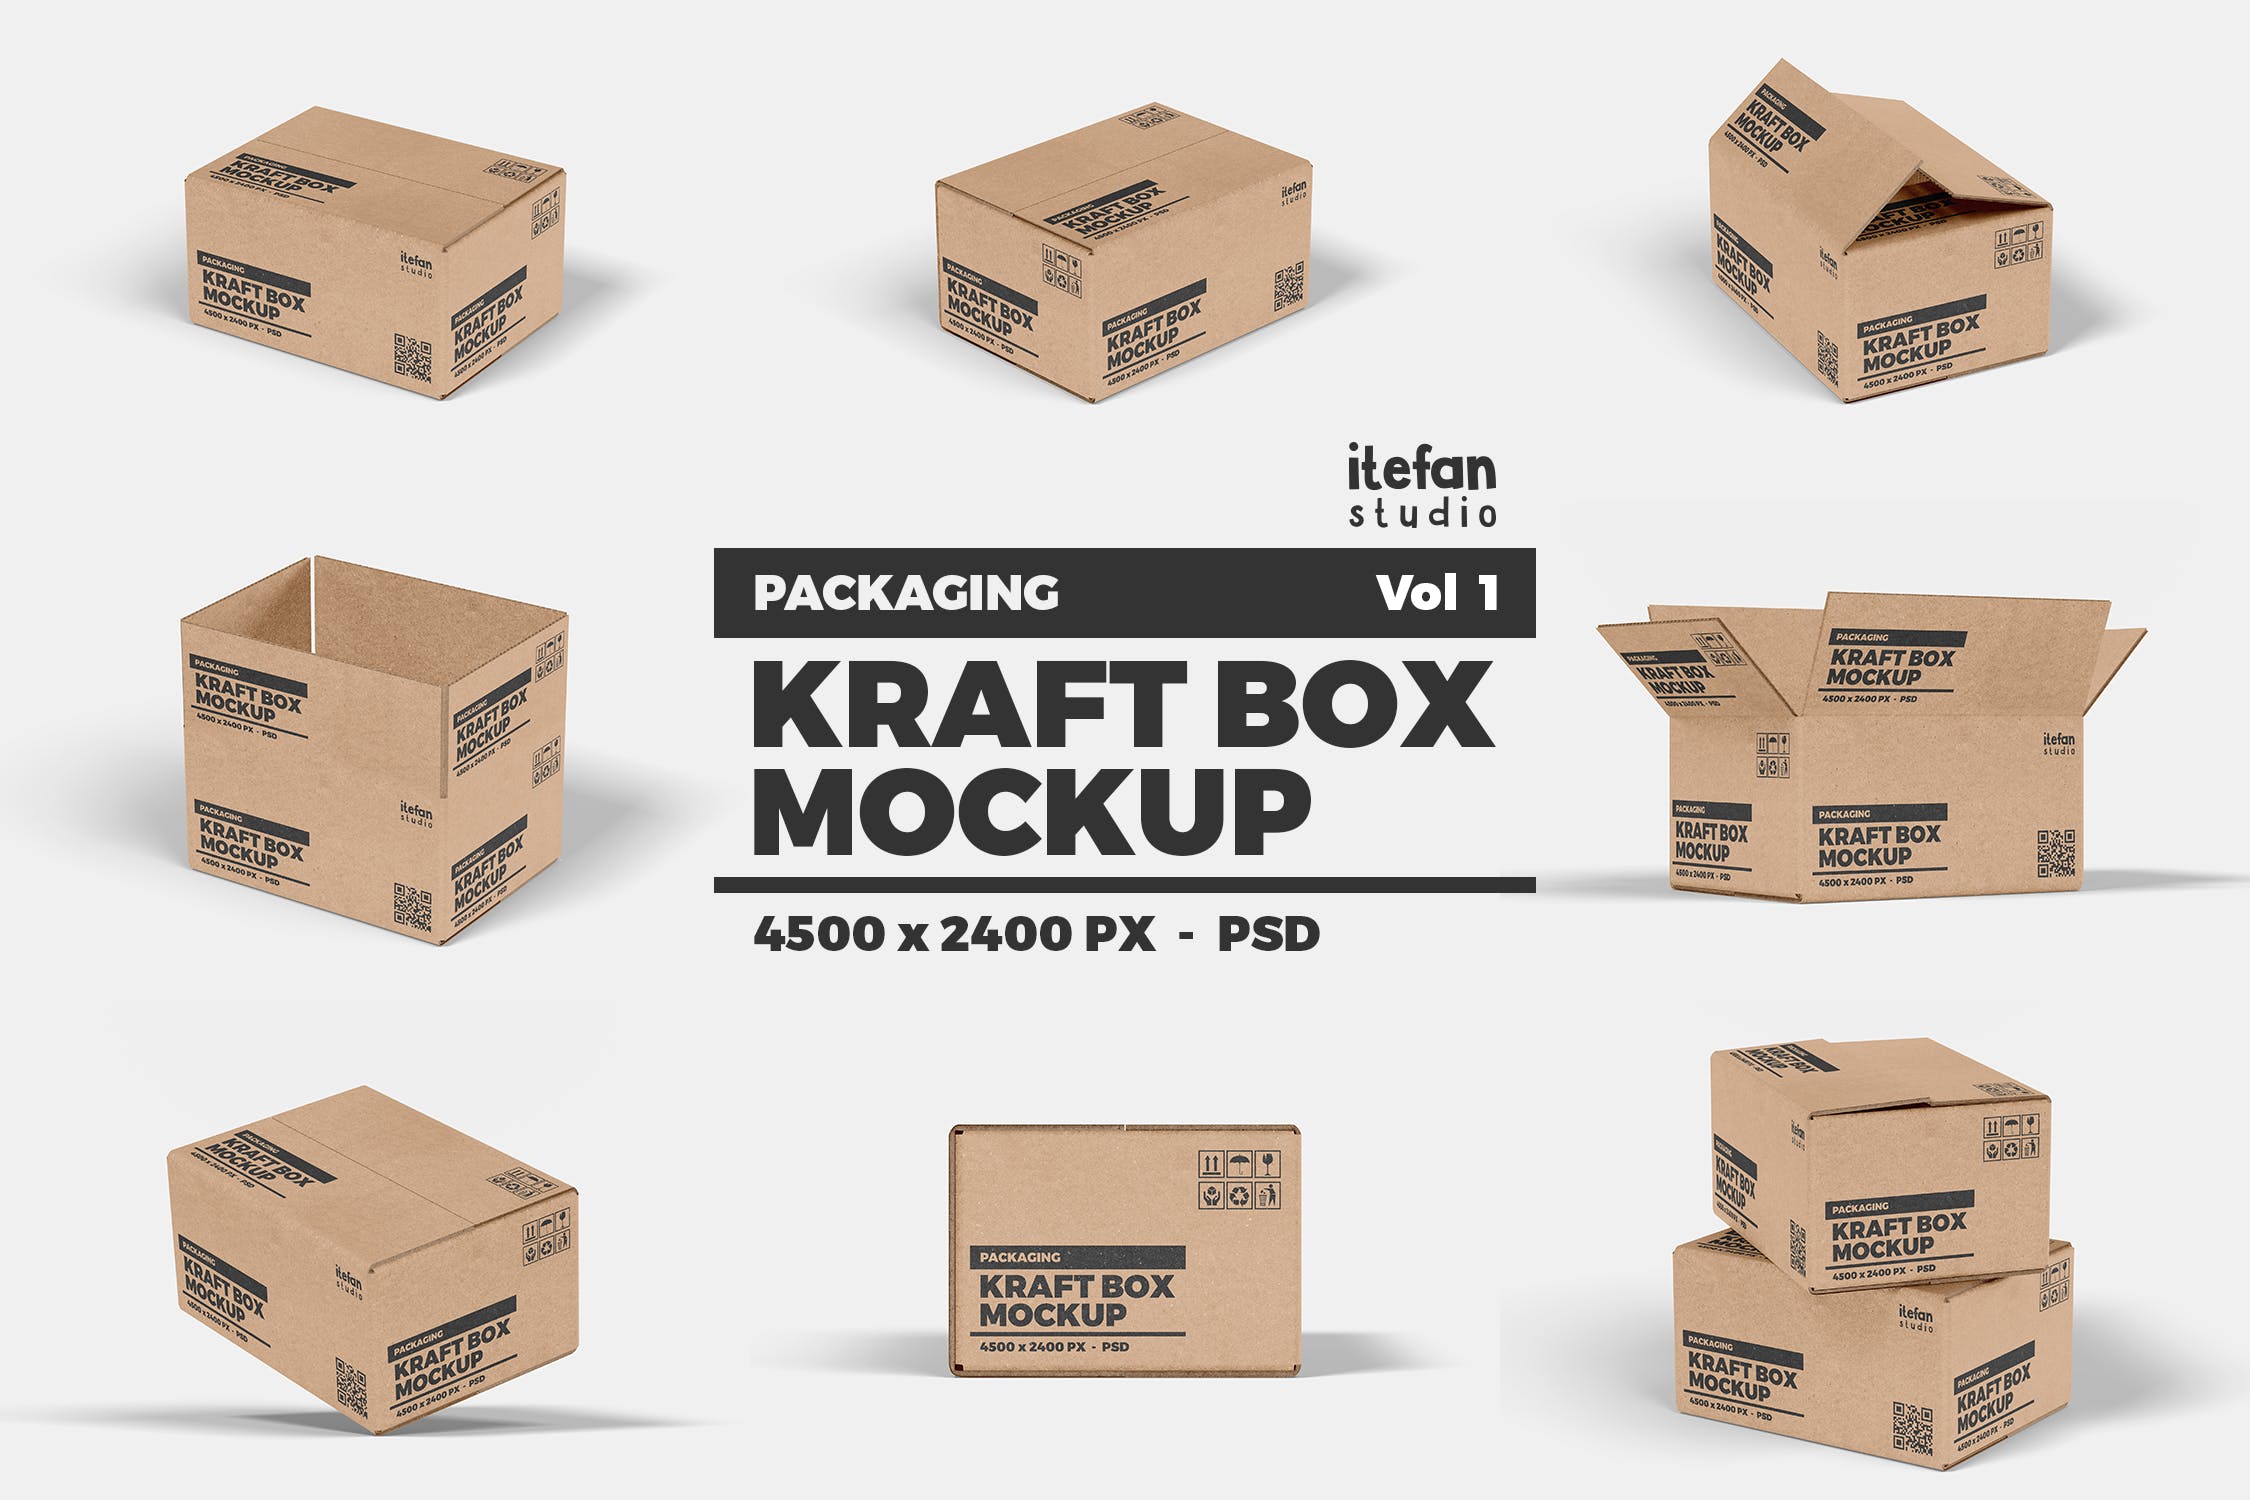 牛皮纸箱包装设计效果图样机v1 Kraft Box Mockup – Packaging Vol 1插图